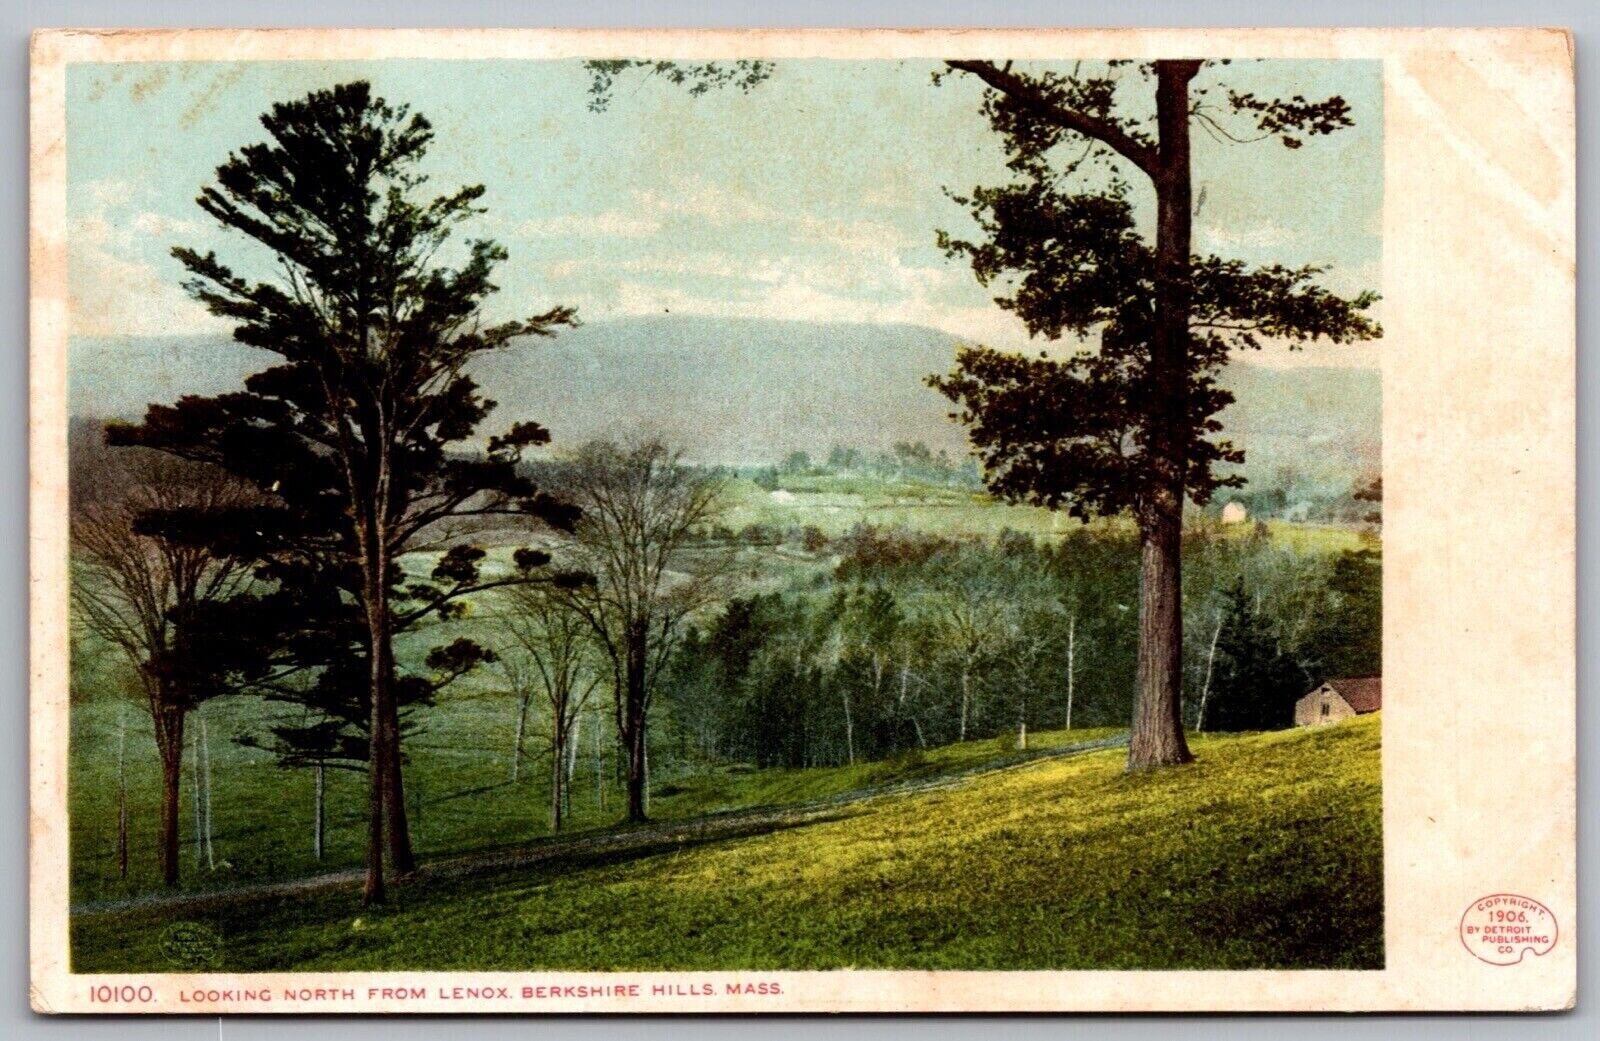 Lenox Berkshire Hills Massachusetts Country Road Mountains Mass VNG UNP Postcard